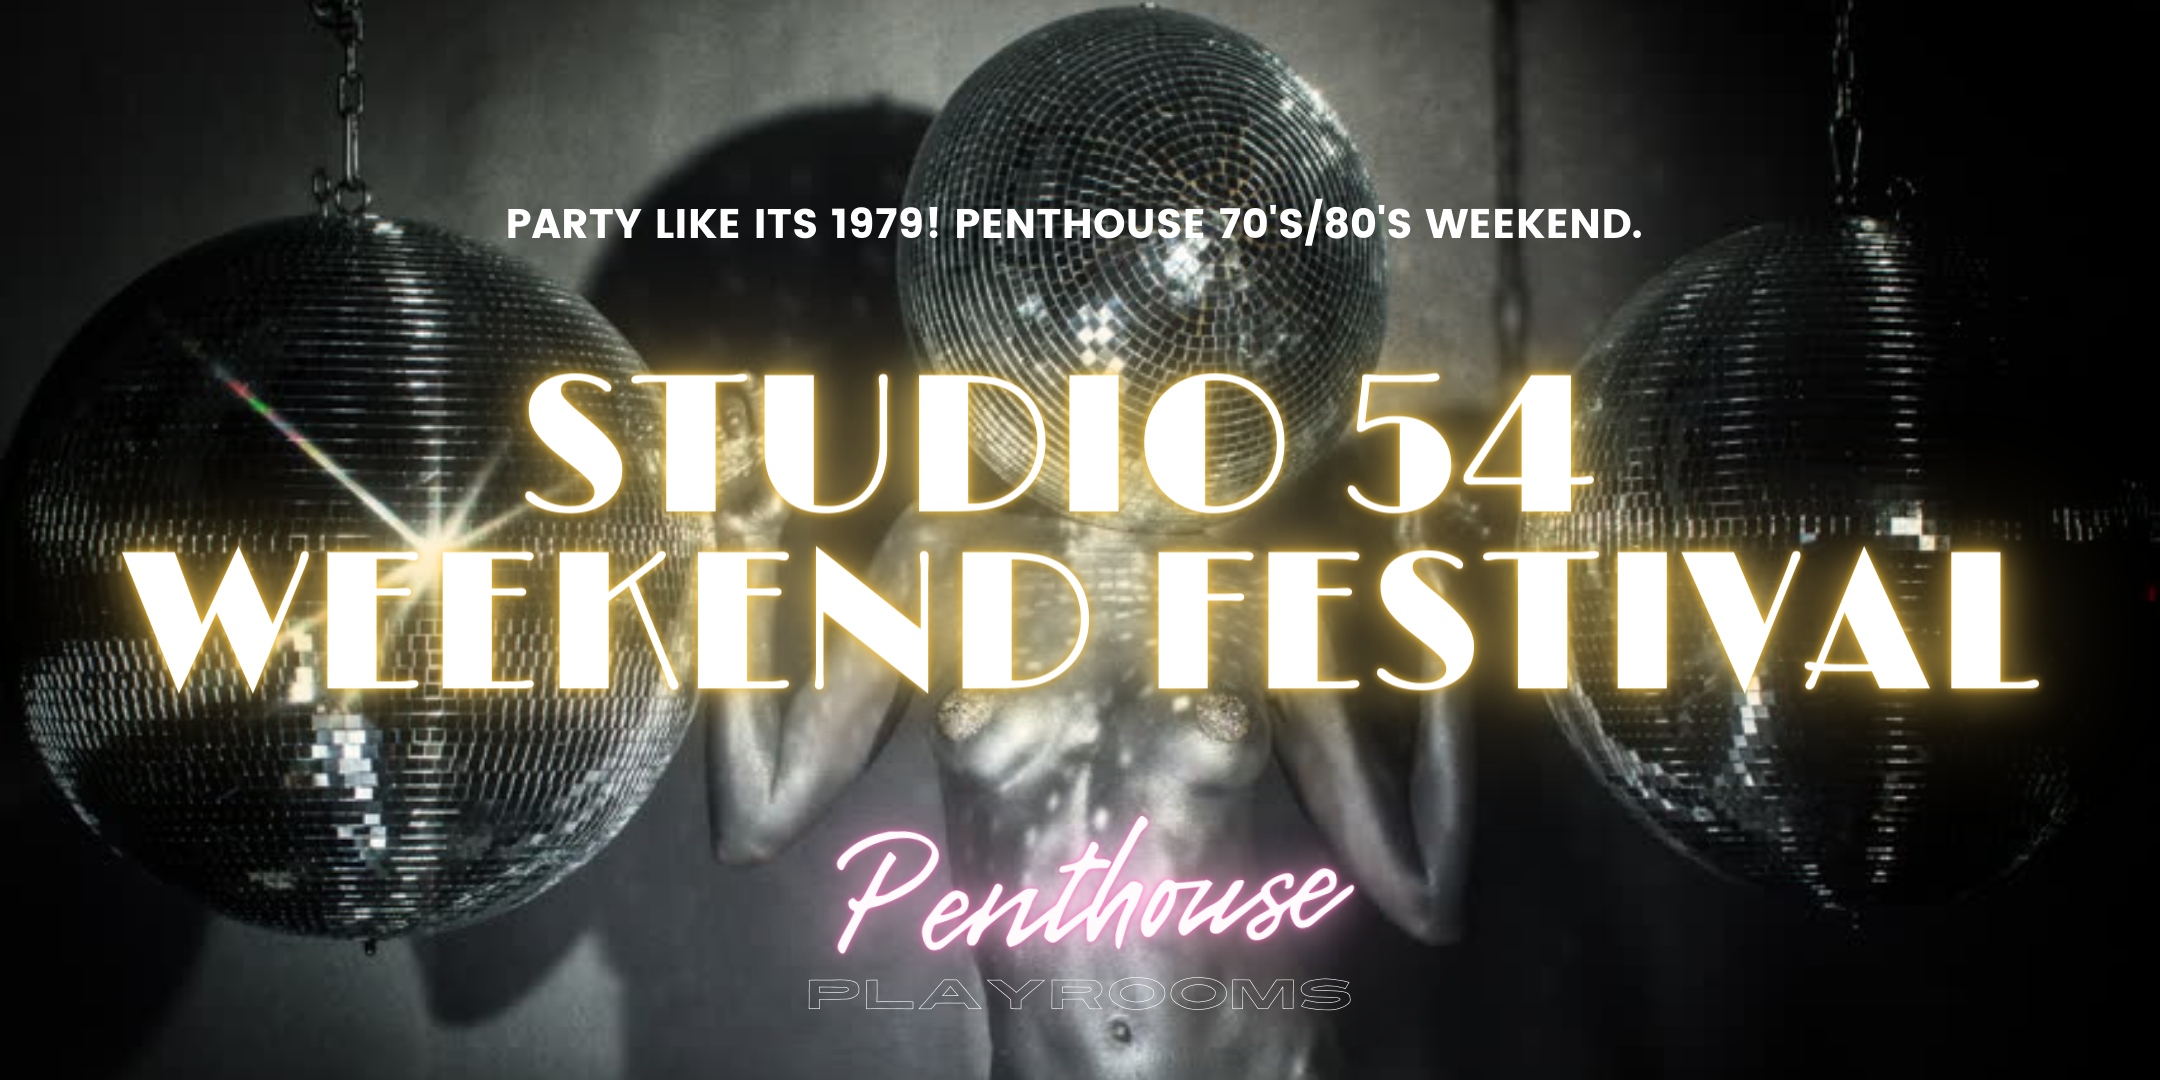 Swinging Seventies Studio 54 Festival WEEKEND Penthouse Playrooms